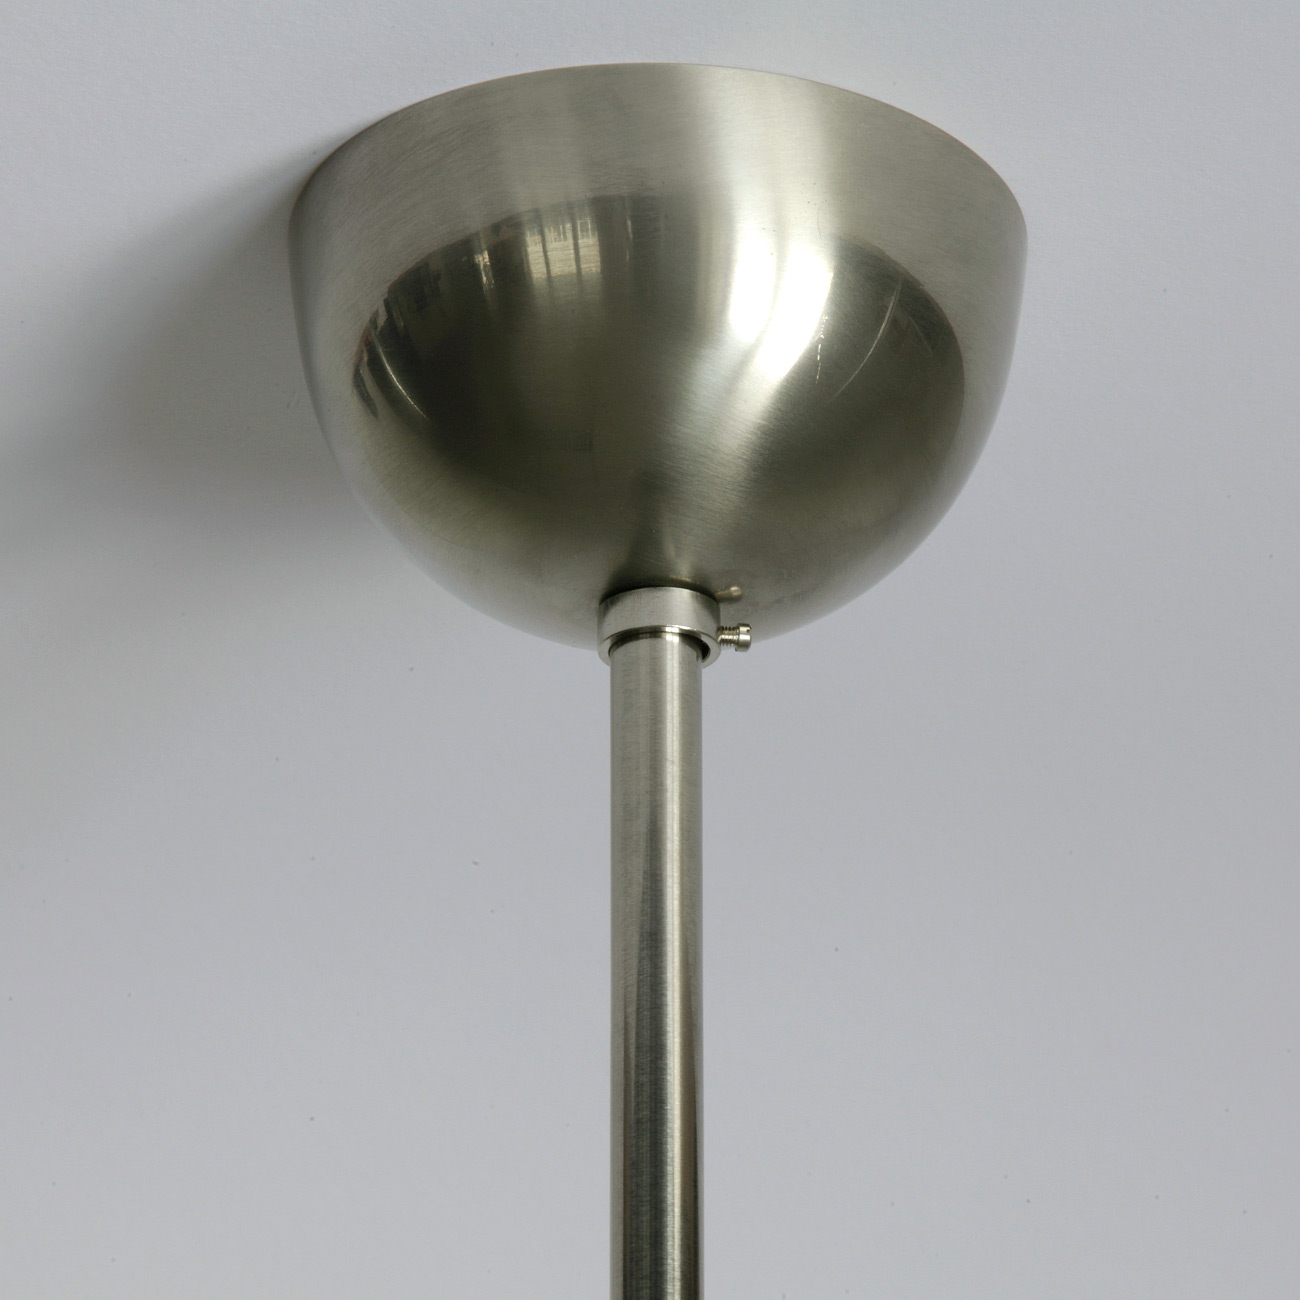 Kugel-Pendelleuchte mit mattem Opalglas Ø 25/30/35/40/45 cm: Deckenteil in der Messing-Oberfläche „matt vernickelt“